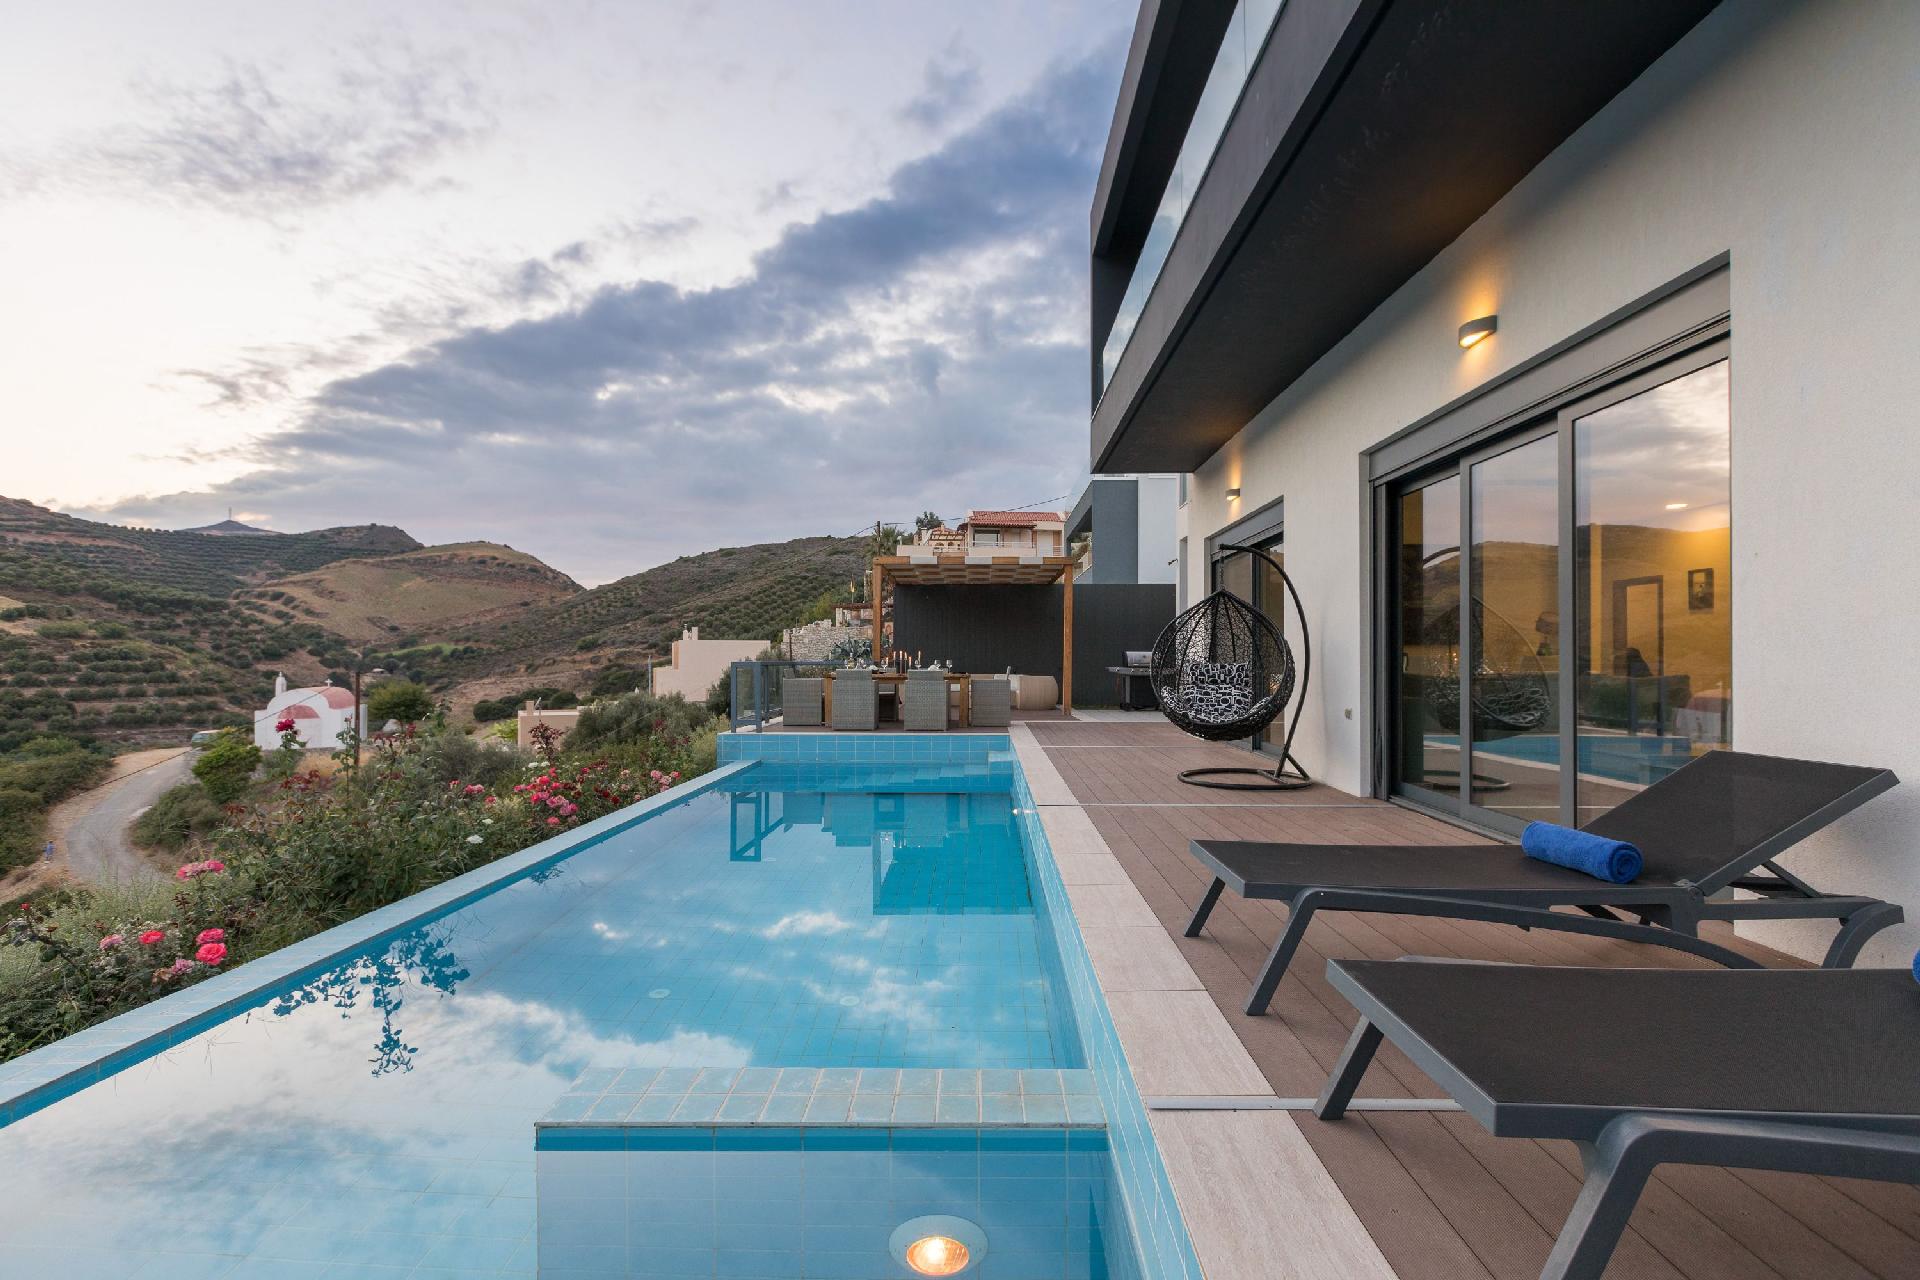 Ferienhaus mit Privatpool für 6 Personen  + 2  in Griechenland